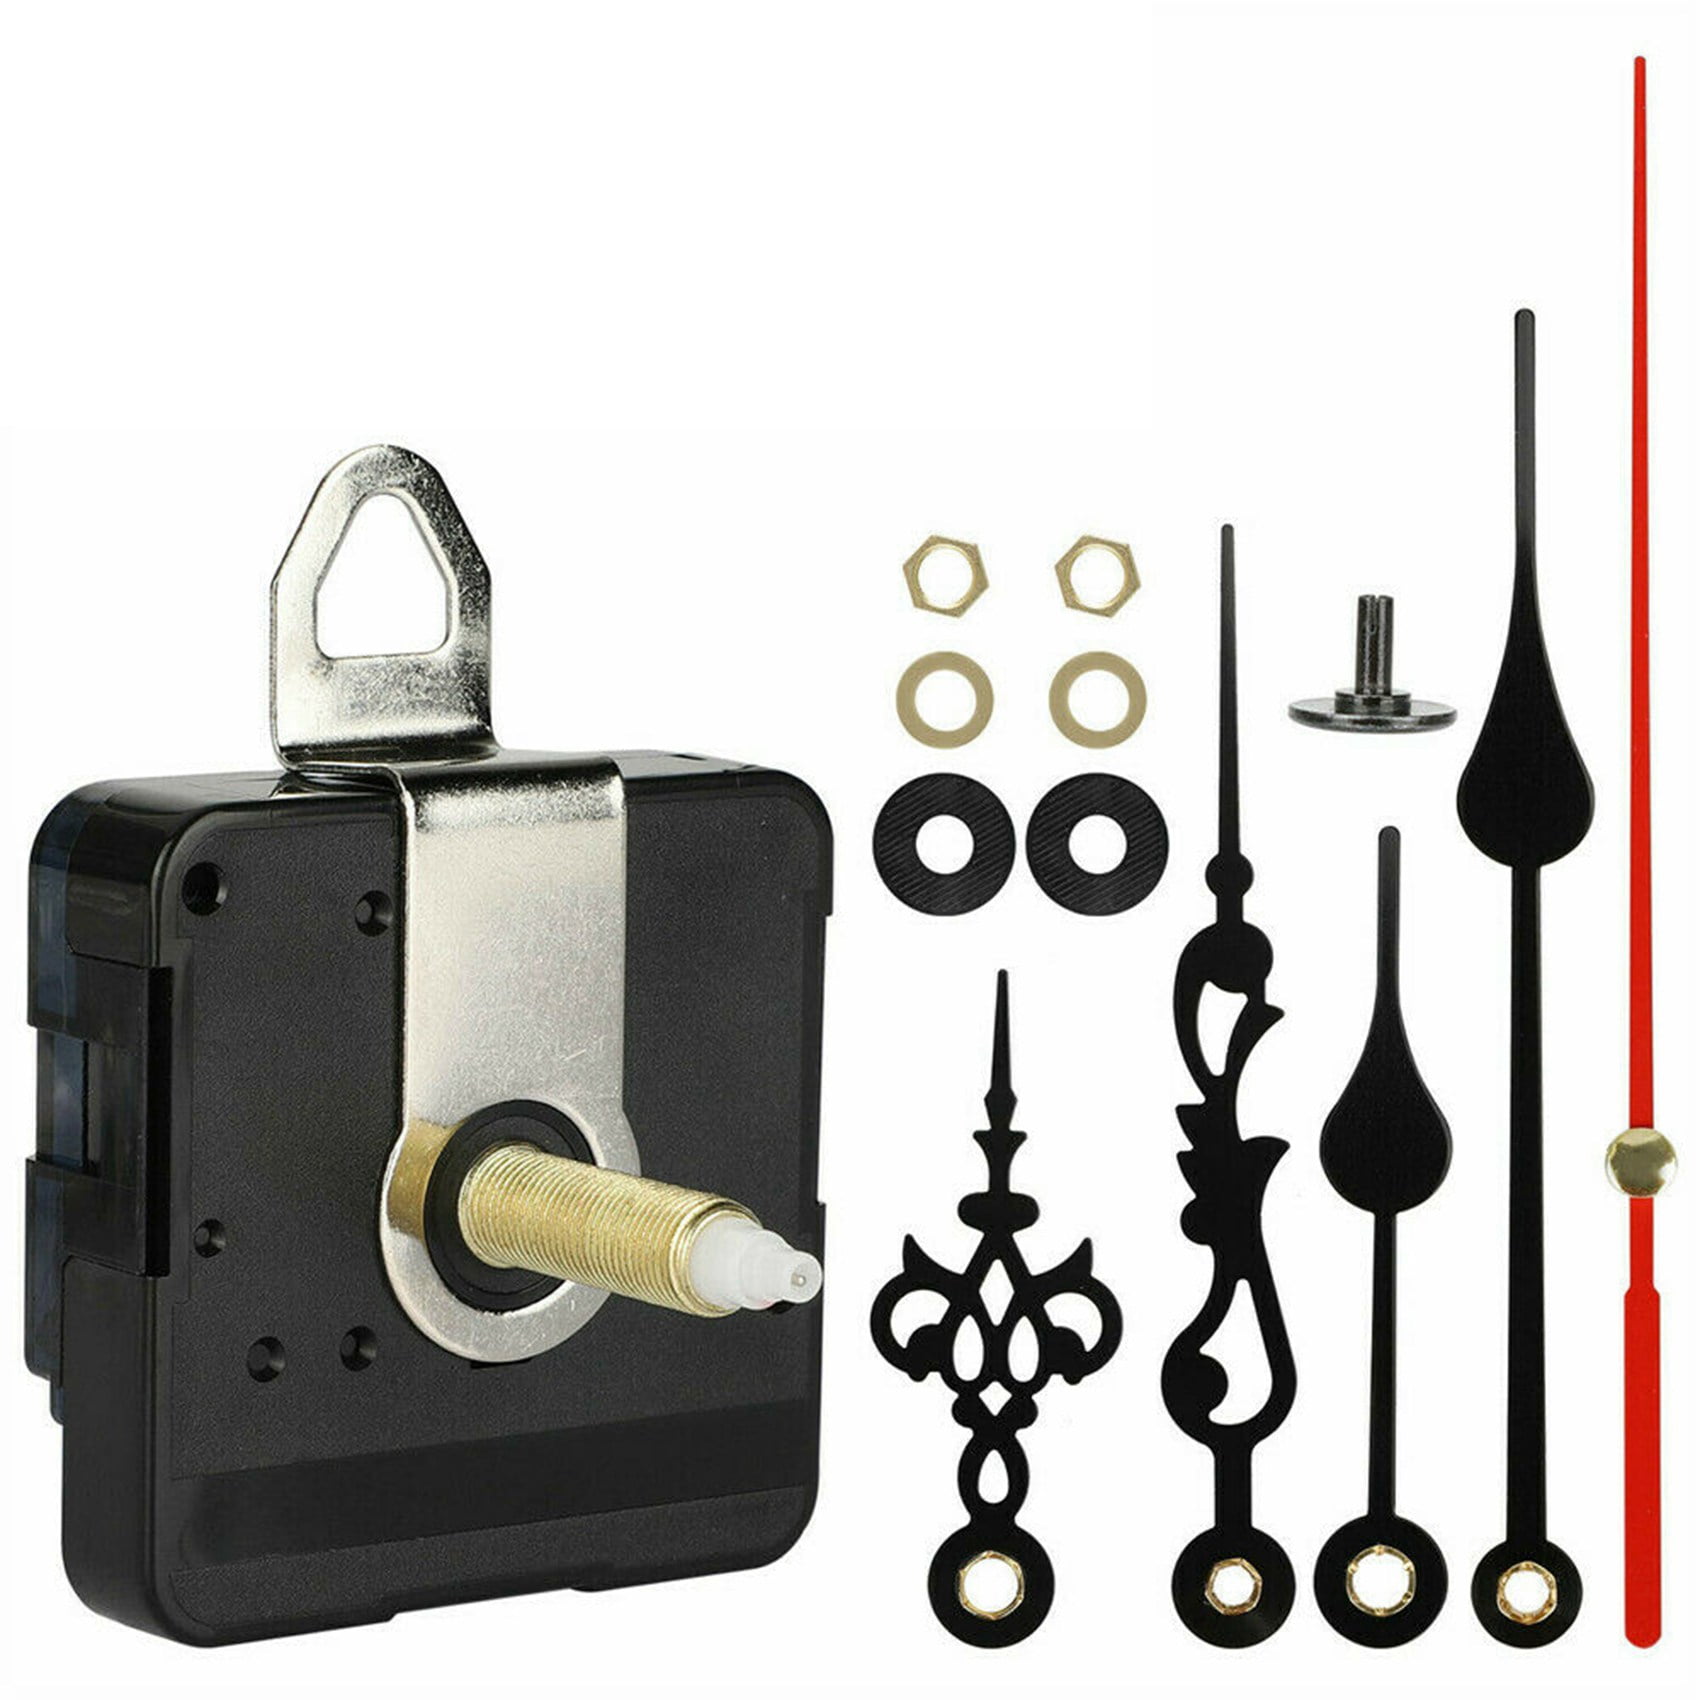 Quartz Wall Clock Movement Mechanism Hand Replacement Motor Repair Kit DIY Tool 